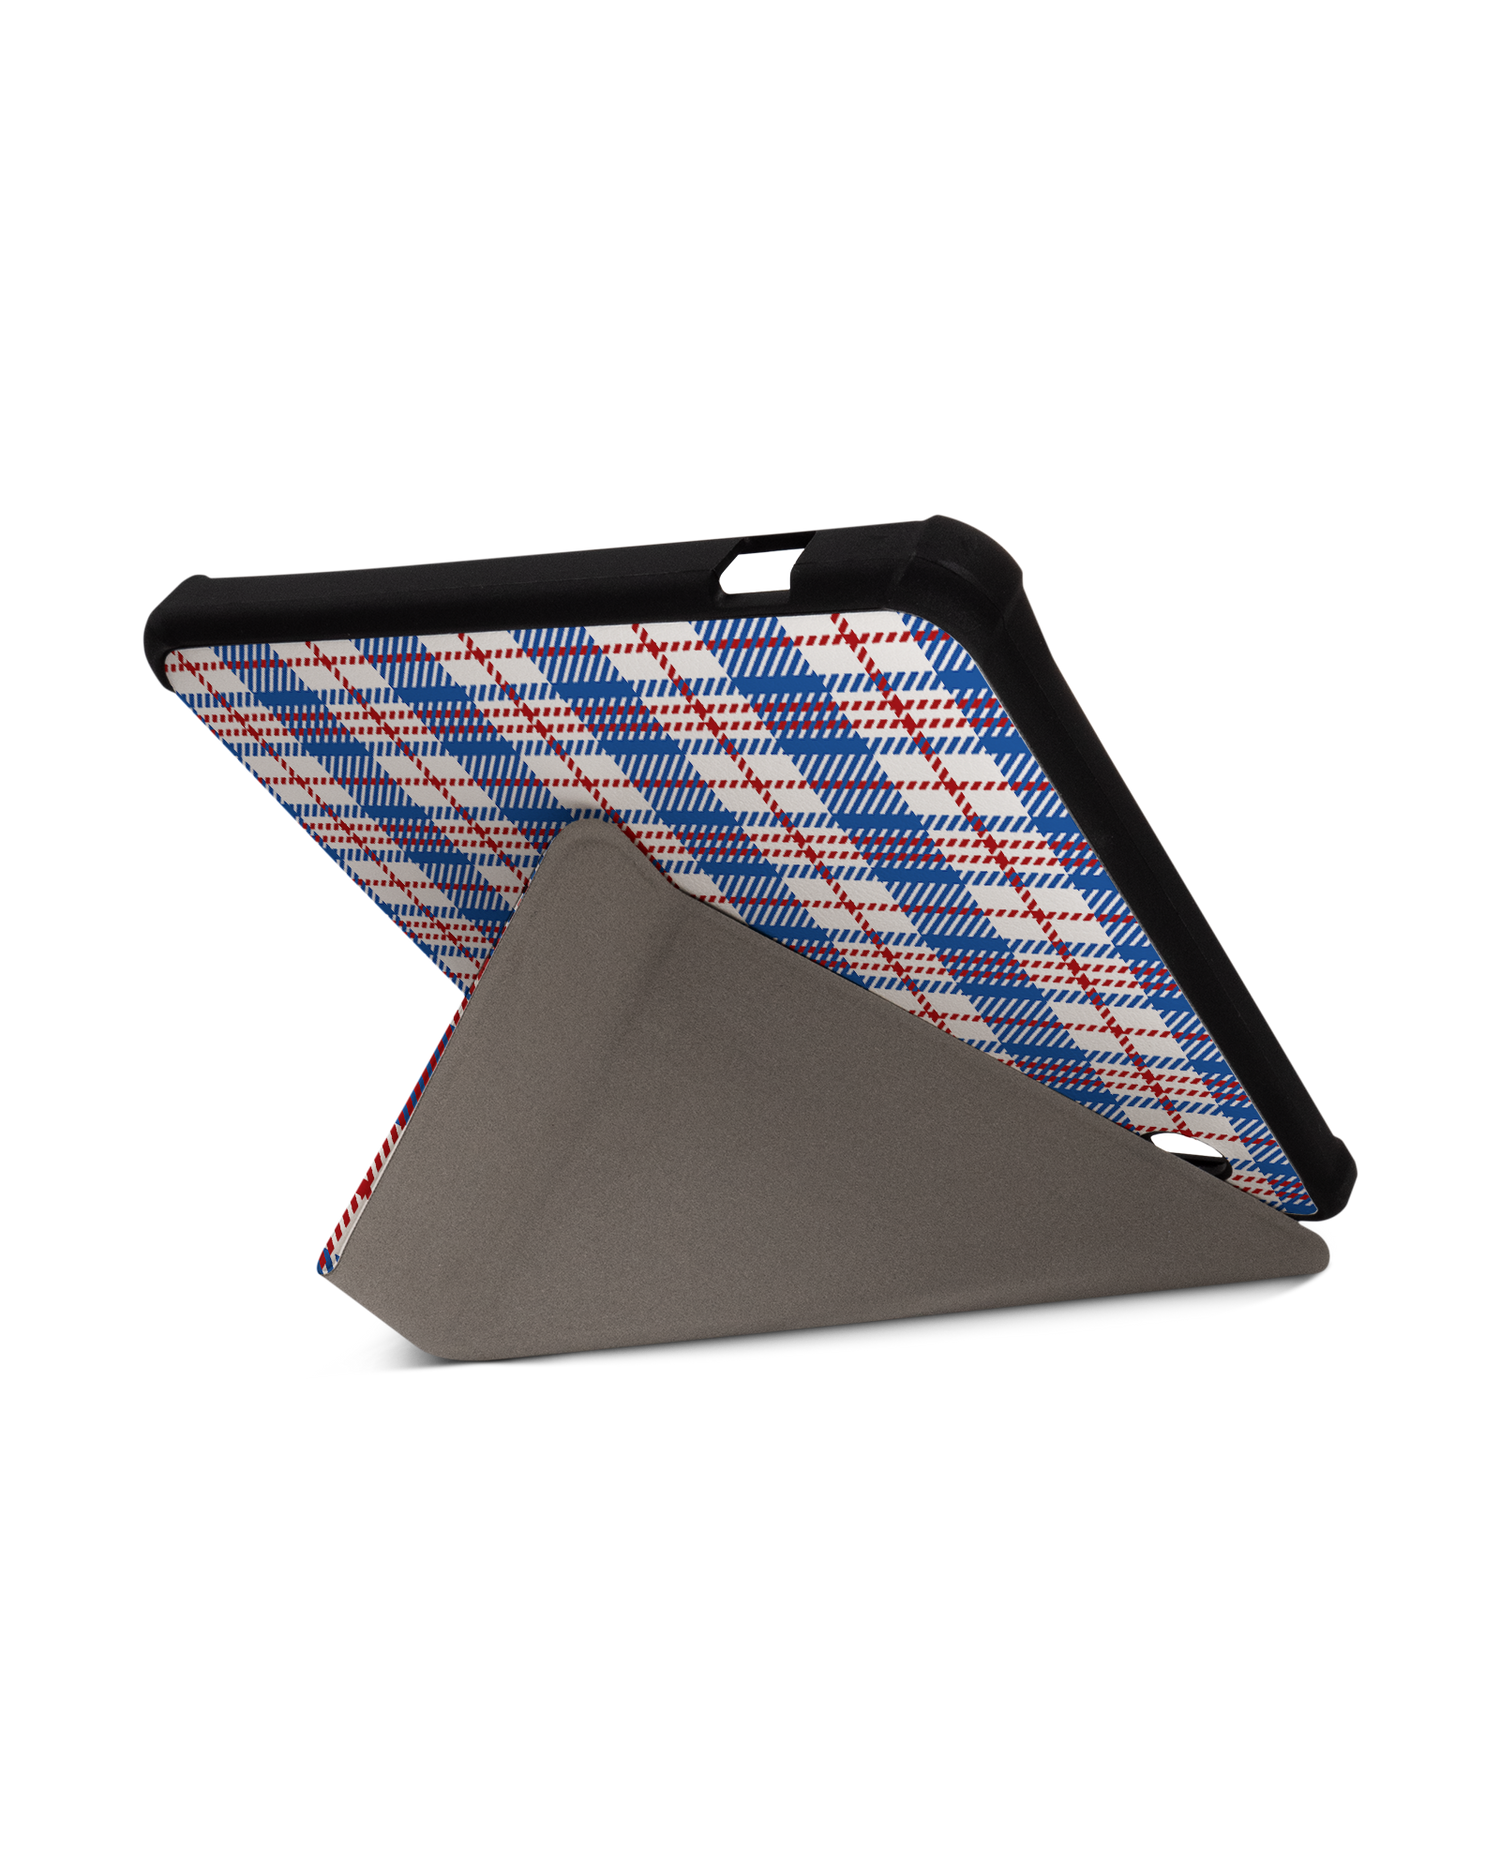 Plaid Market Bag eBook-Reader Smart Case für tolino vision 5 (2019): Aufgestellt im Querformat